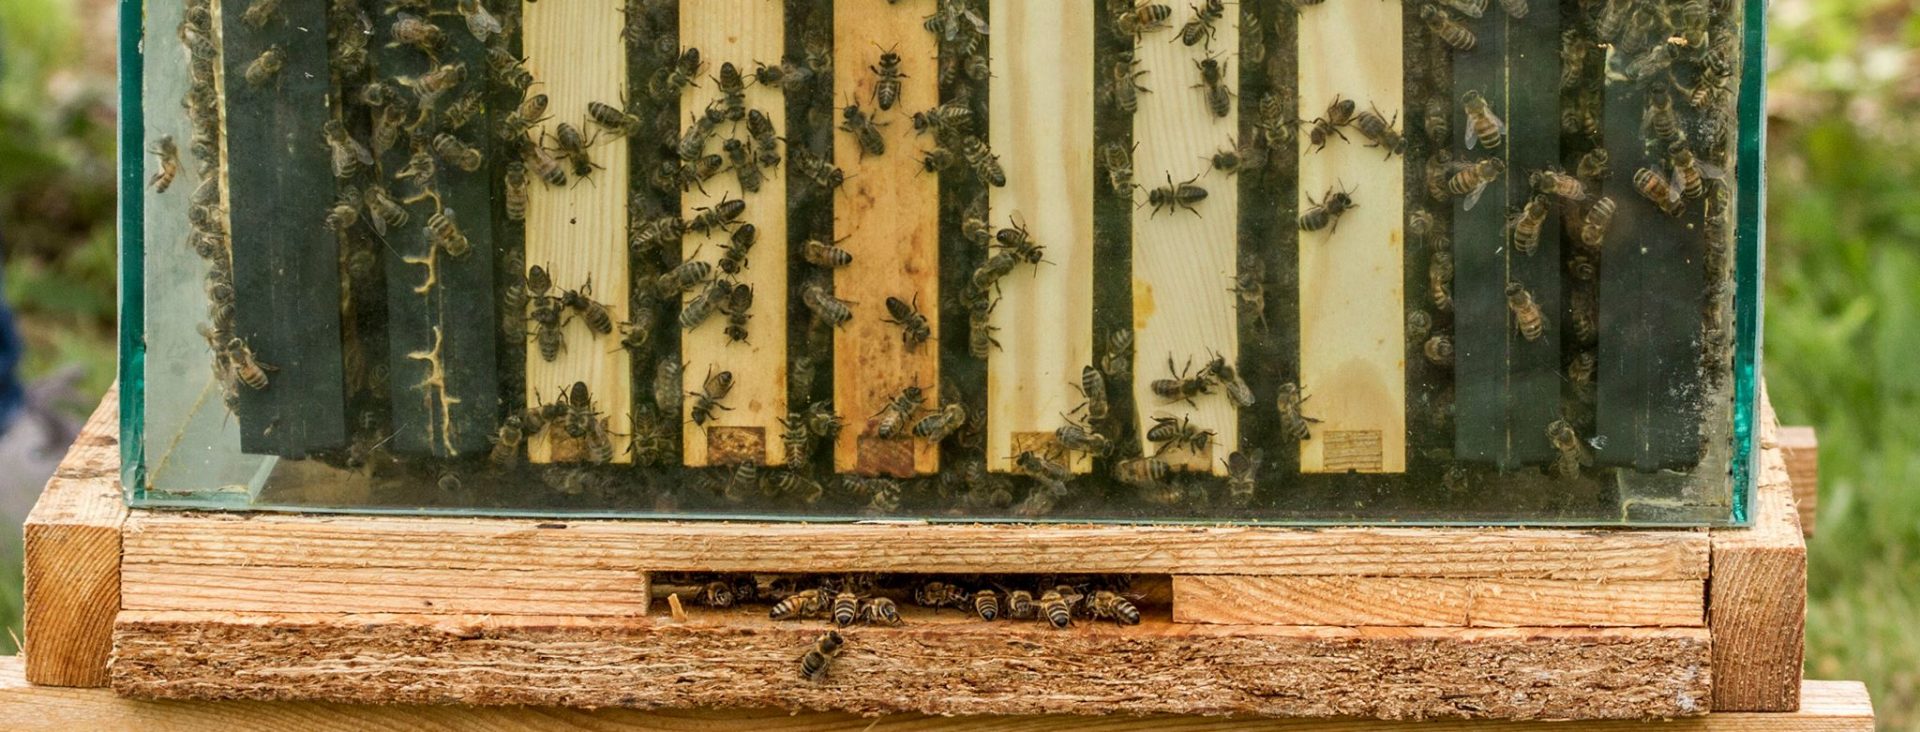 Uczulenie na jad pszczeli cz.3 – metoda RUSH